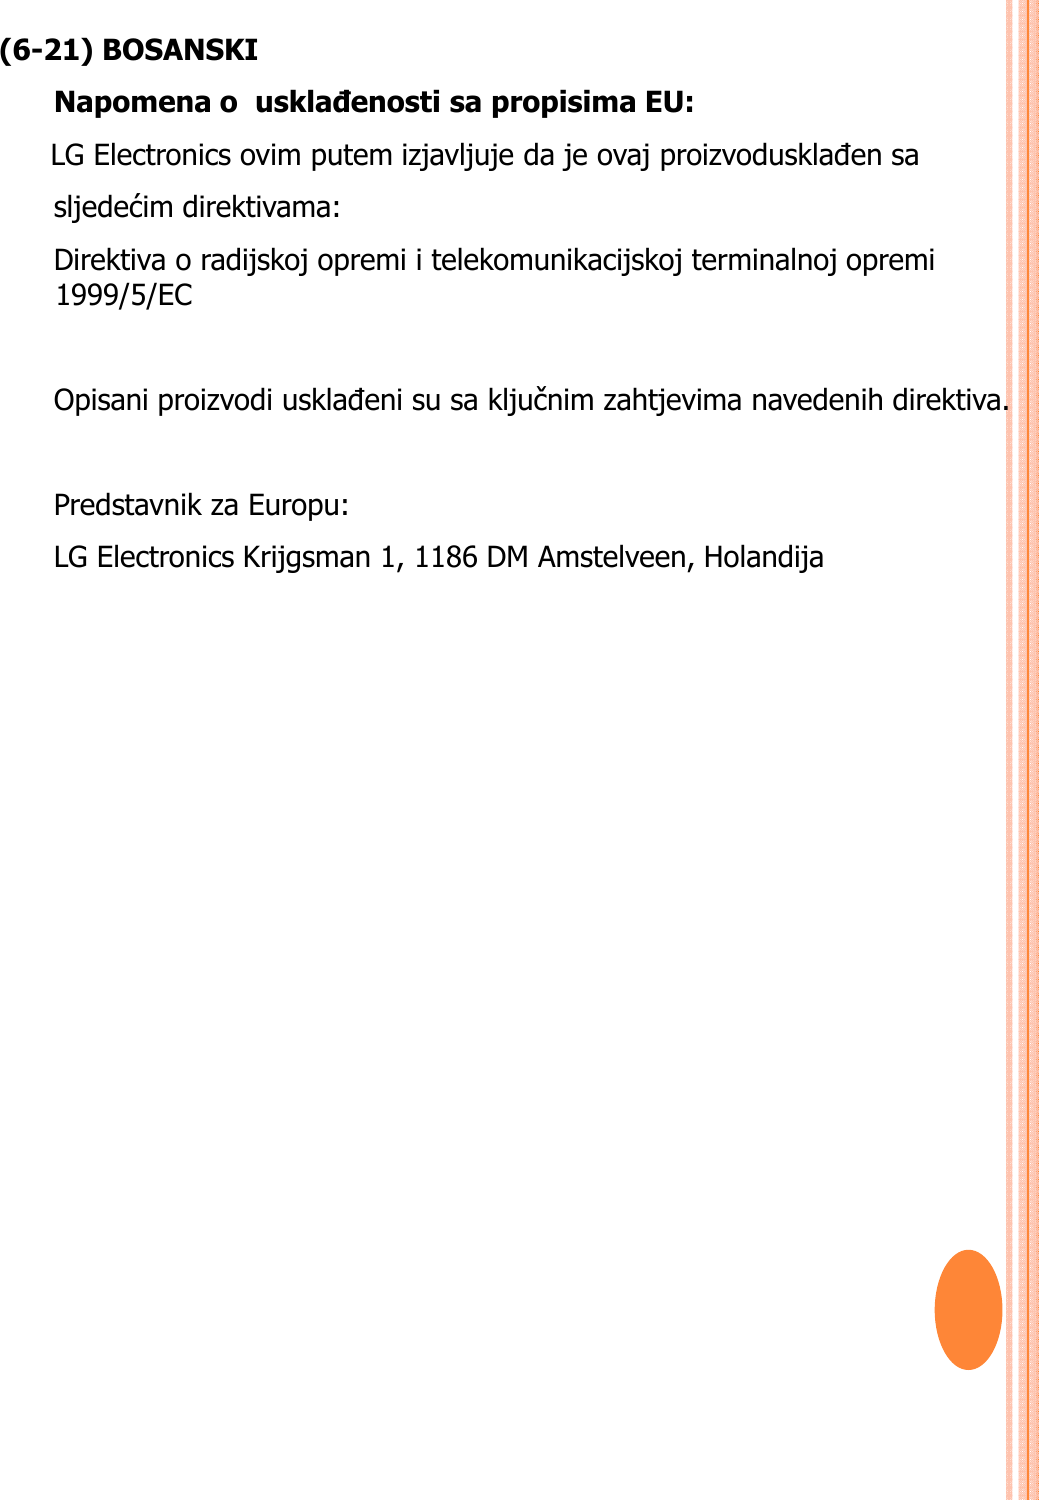 (6-21) BOSANSKINapomena o  usklañenosti sa propisima EU:  LG Electronics ovim putem izjavljuje da je ovaj proizvodusklađen sa sljedećim direktivama: Direktiva o radijskoj opremi i telekomunikacijskoj terminalnoj opremi 1999/5/EC Opisani proizvodi usklađeni su sa ključnim zahtjevima navedenih direktiva.Predstavnik za Europu: LG Electronics Krijgsman 1, 1186 DM Amstelveen, Holandija